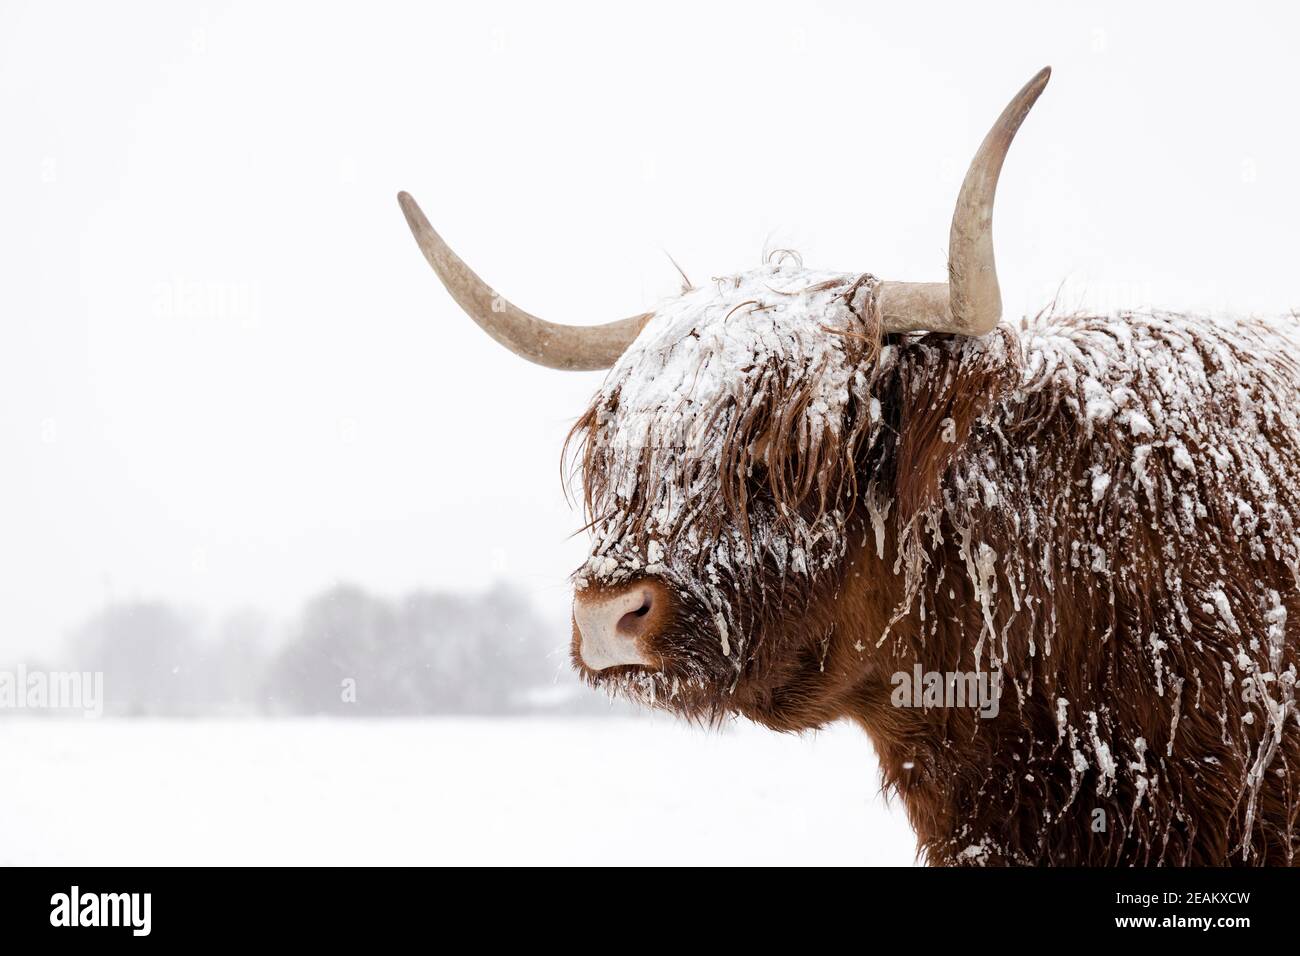 Vache écossaise dans la neige. Photo en gros plan de la tête et des cornes dans un paysage hivernal. Banque D'Images